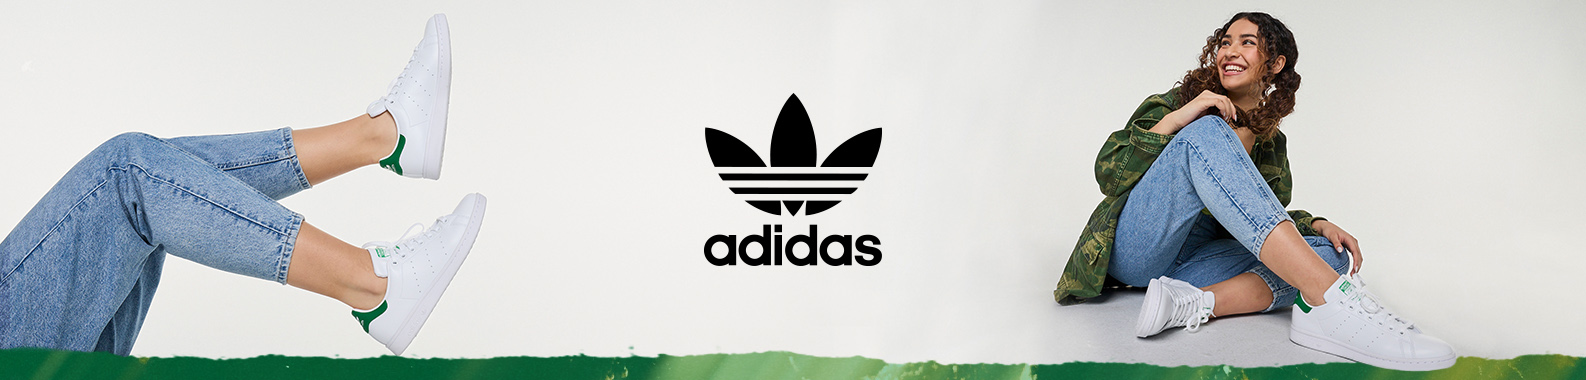 adidas brand header image